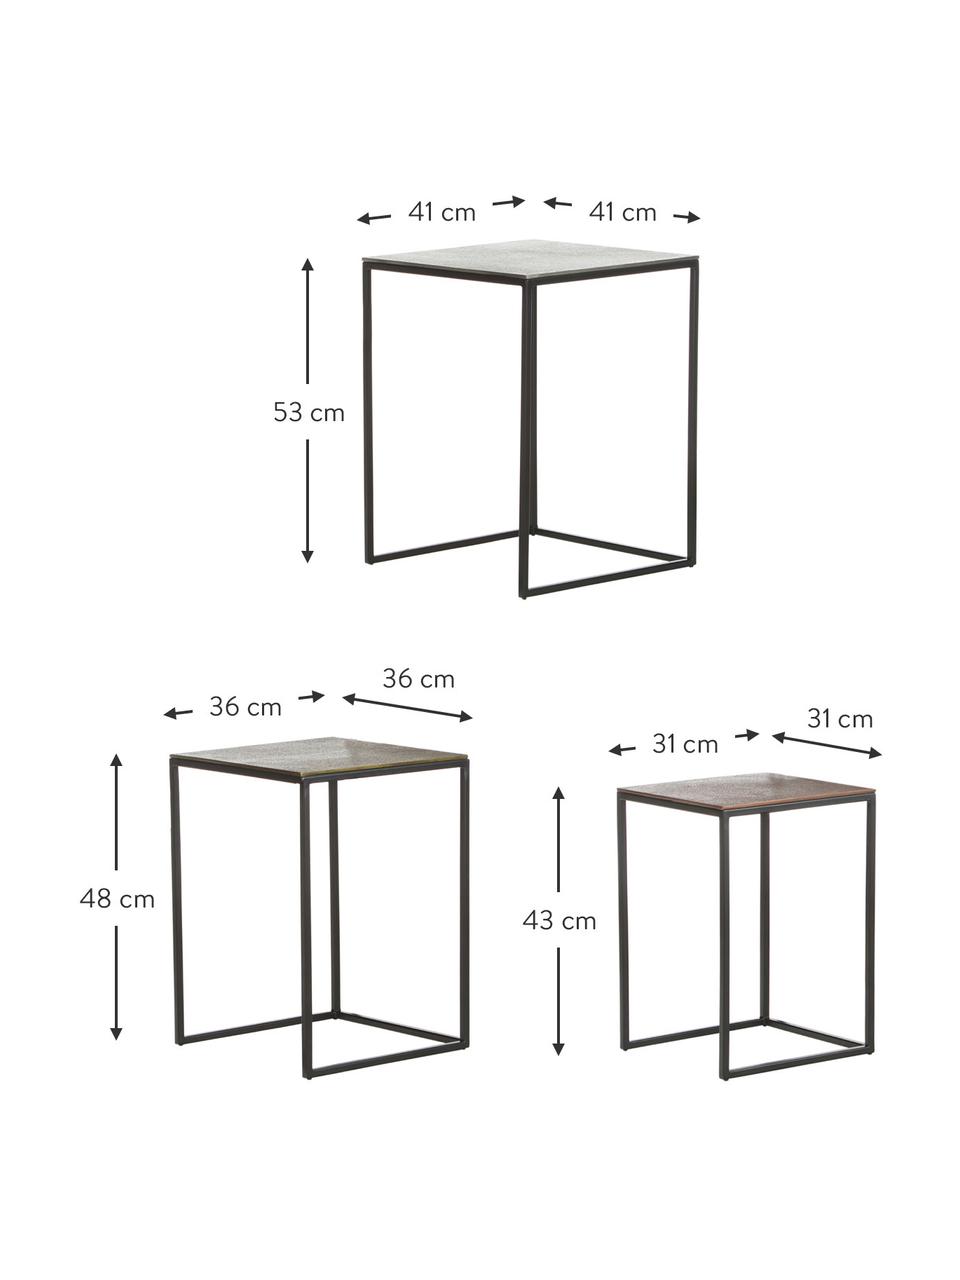 Komplet stolików pomocniczych Dwayne, 3 elem., Blat: aluminium powlekane, Stelaż: metal lakierowany, Odcienie srebrnego, odcienie mosiądzu, Komplet z różnymi rozmiarami